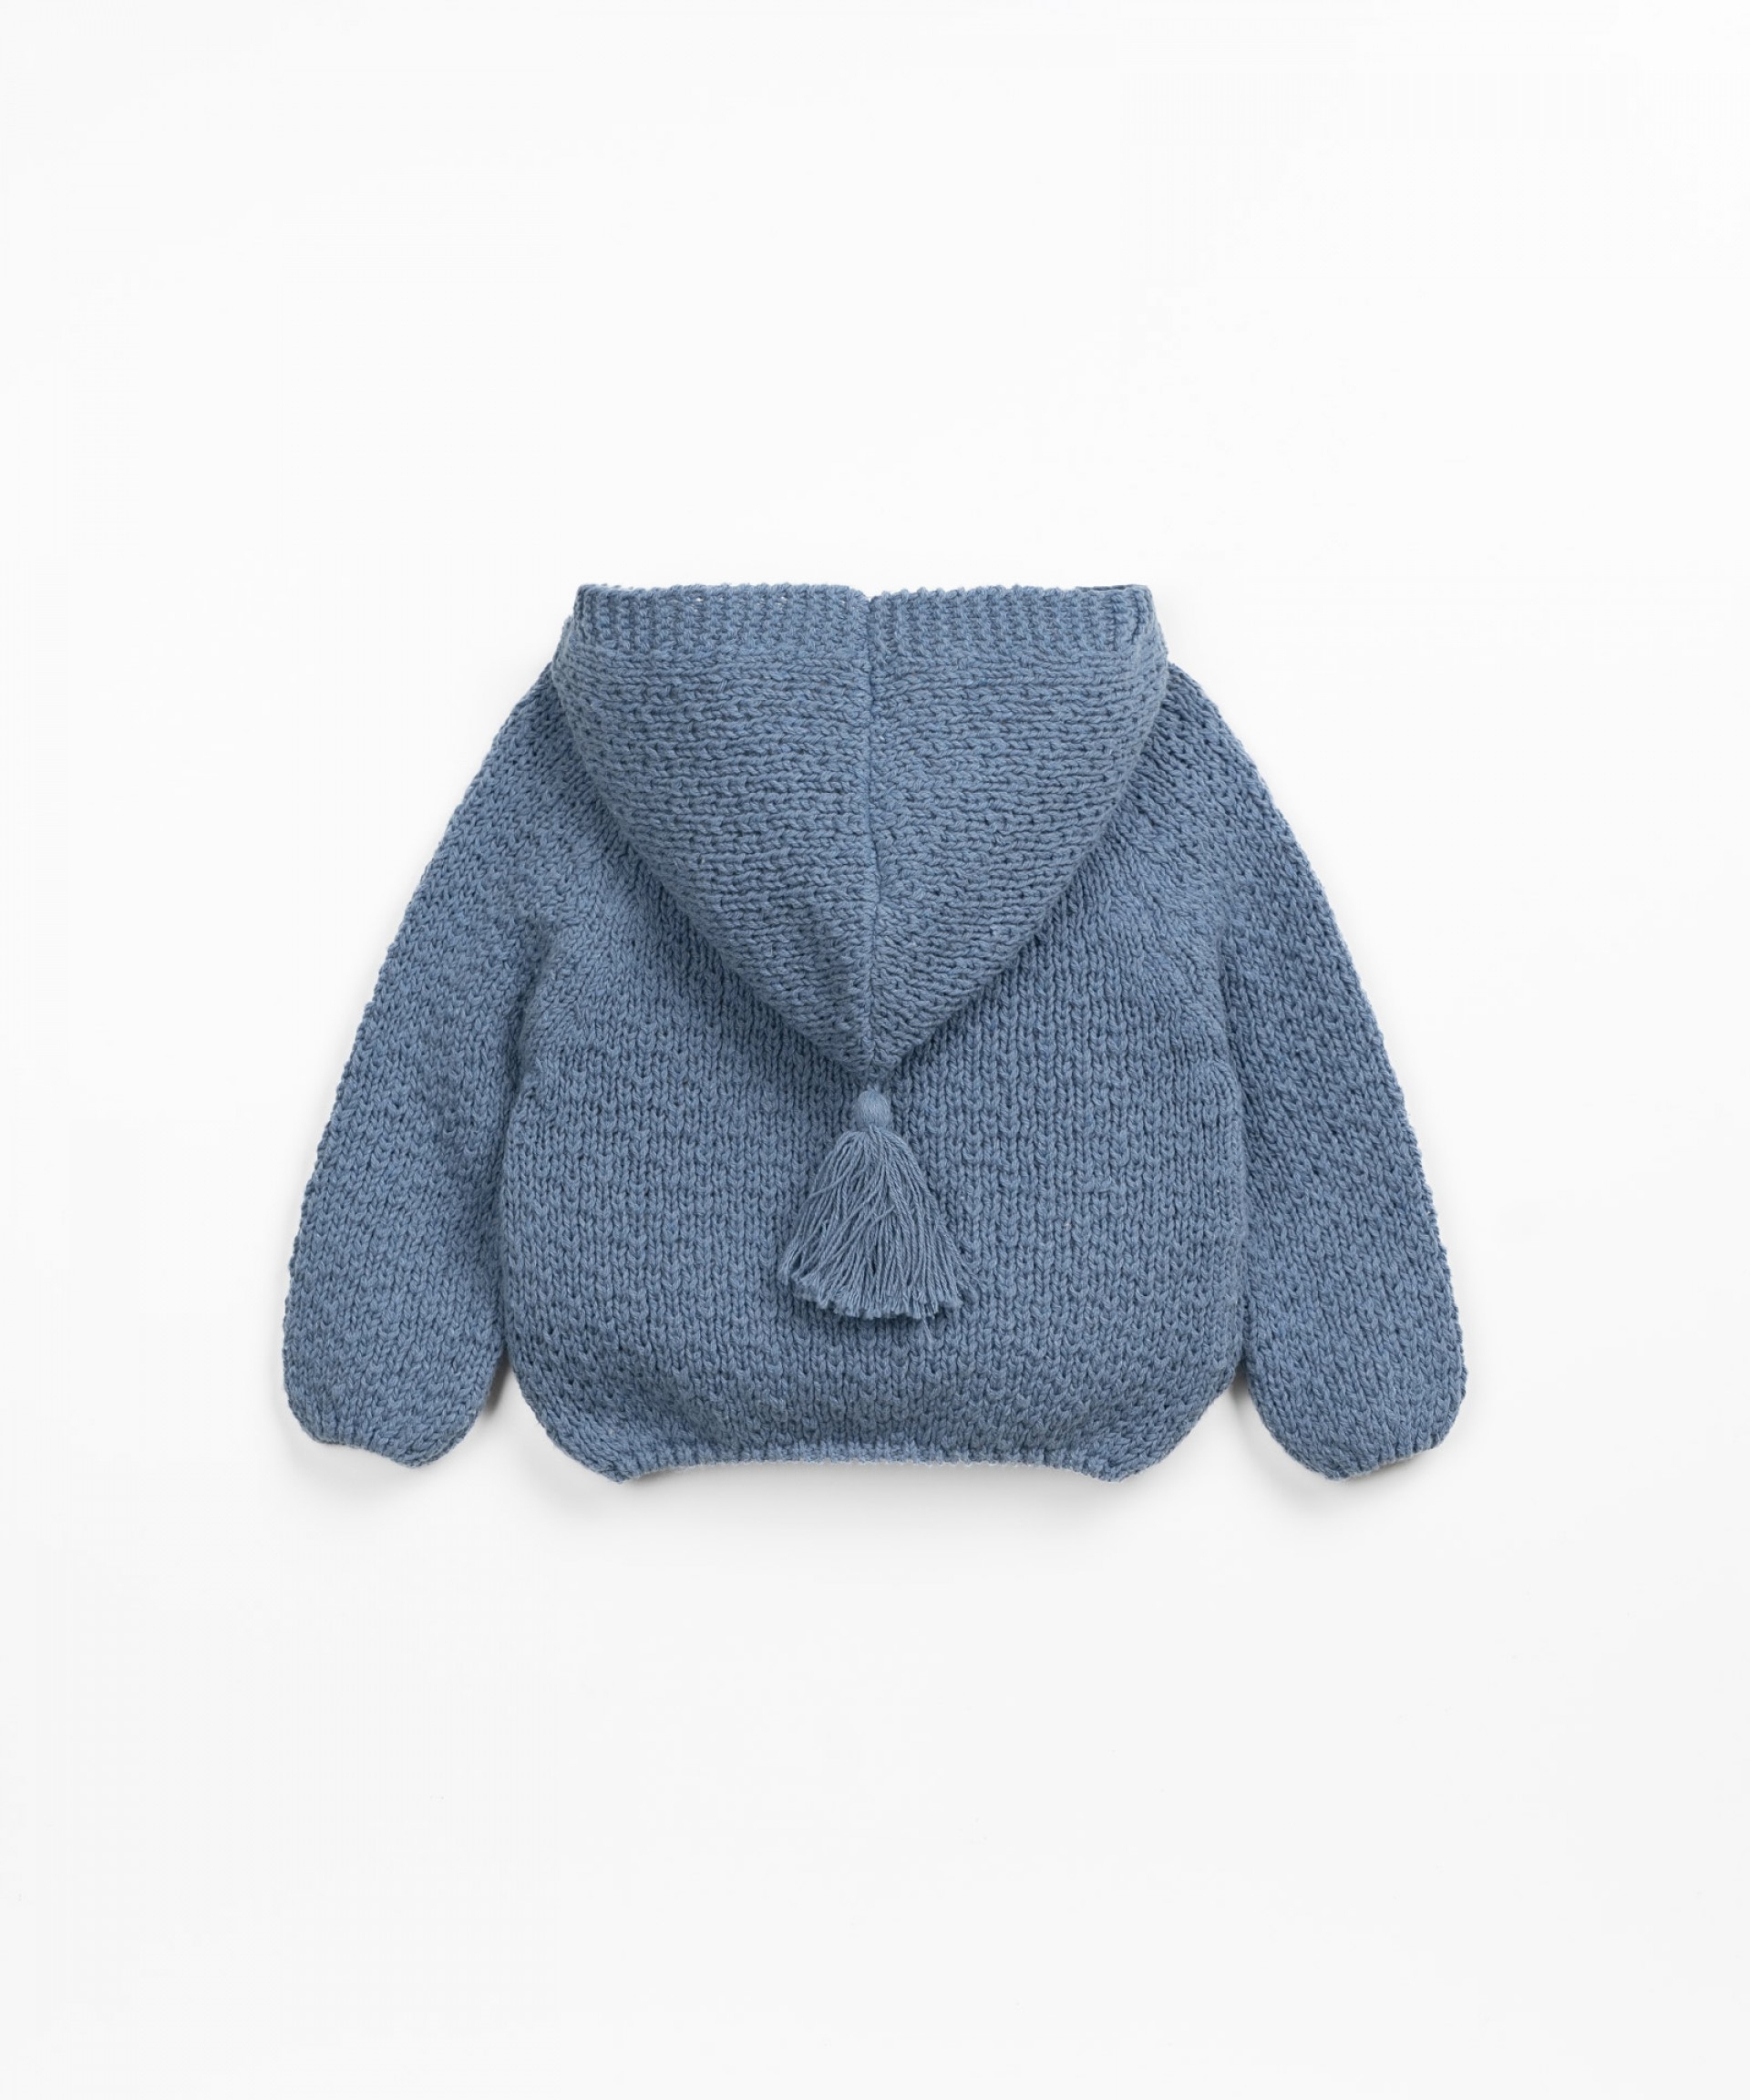 Gilet en tricot avec des boutons de coco | Textile Art